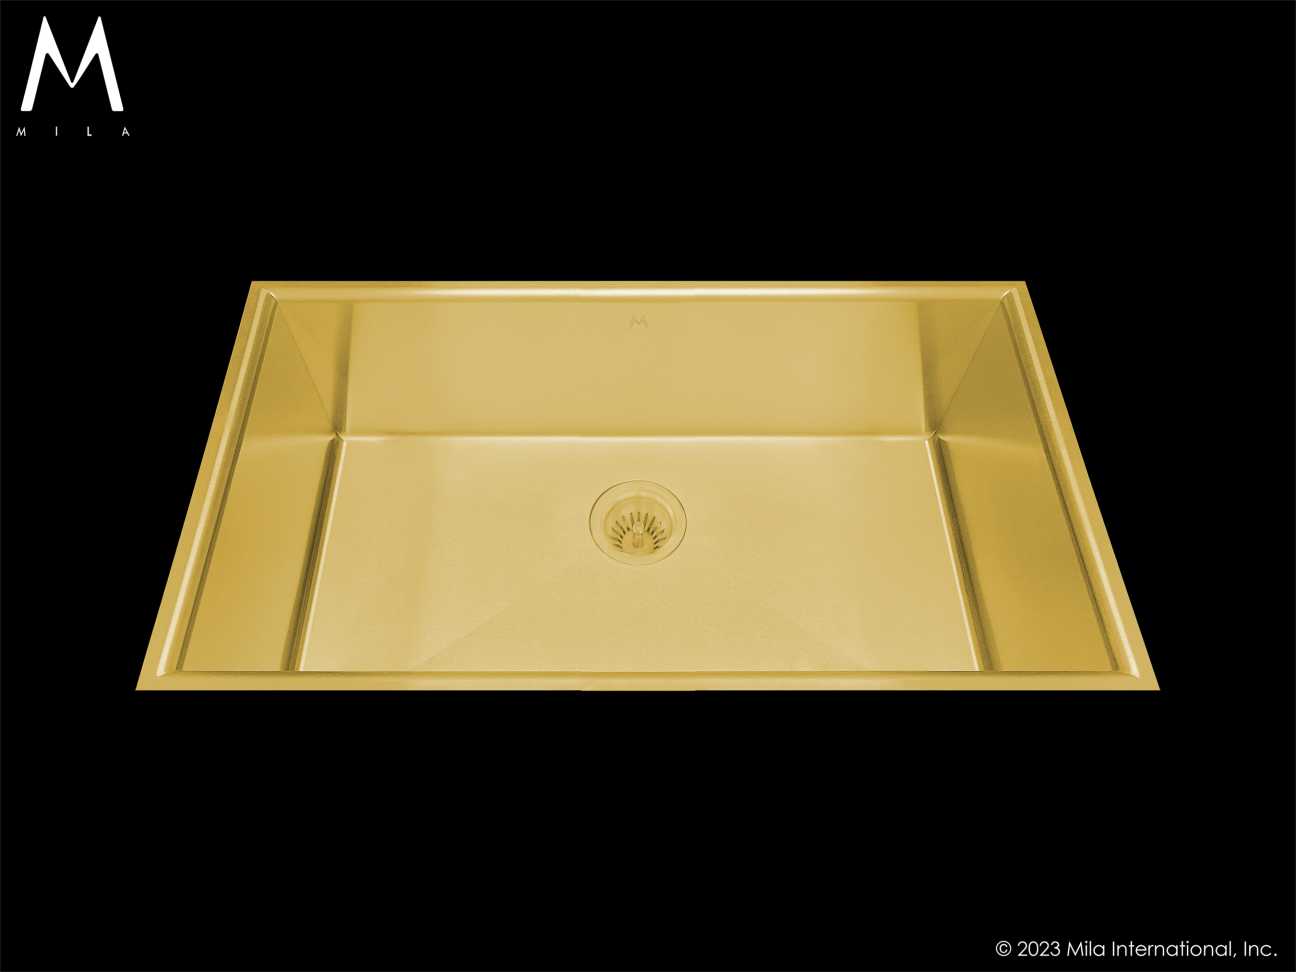 MILA ARC Low Profile Single Bowl Flush-Mount 32.5 x 18 Kitchen Sink